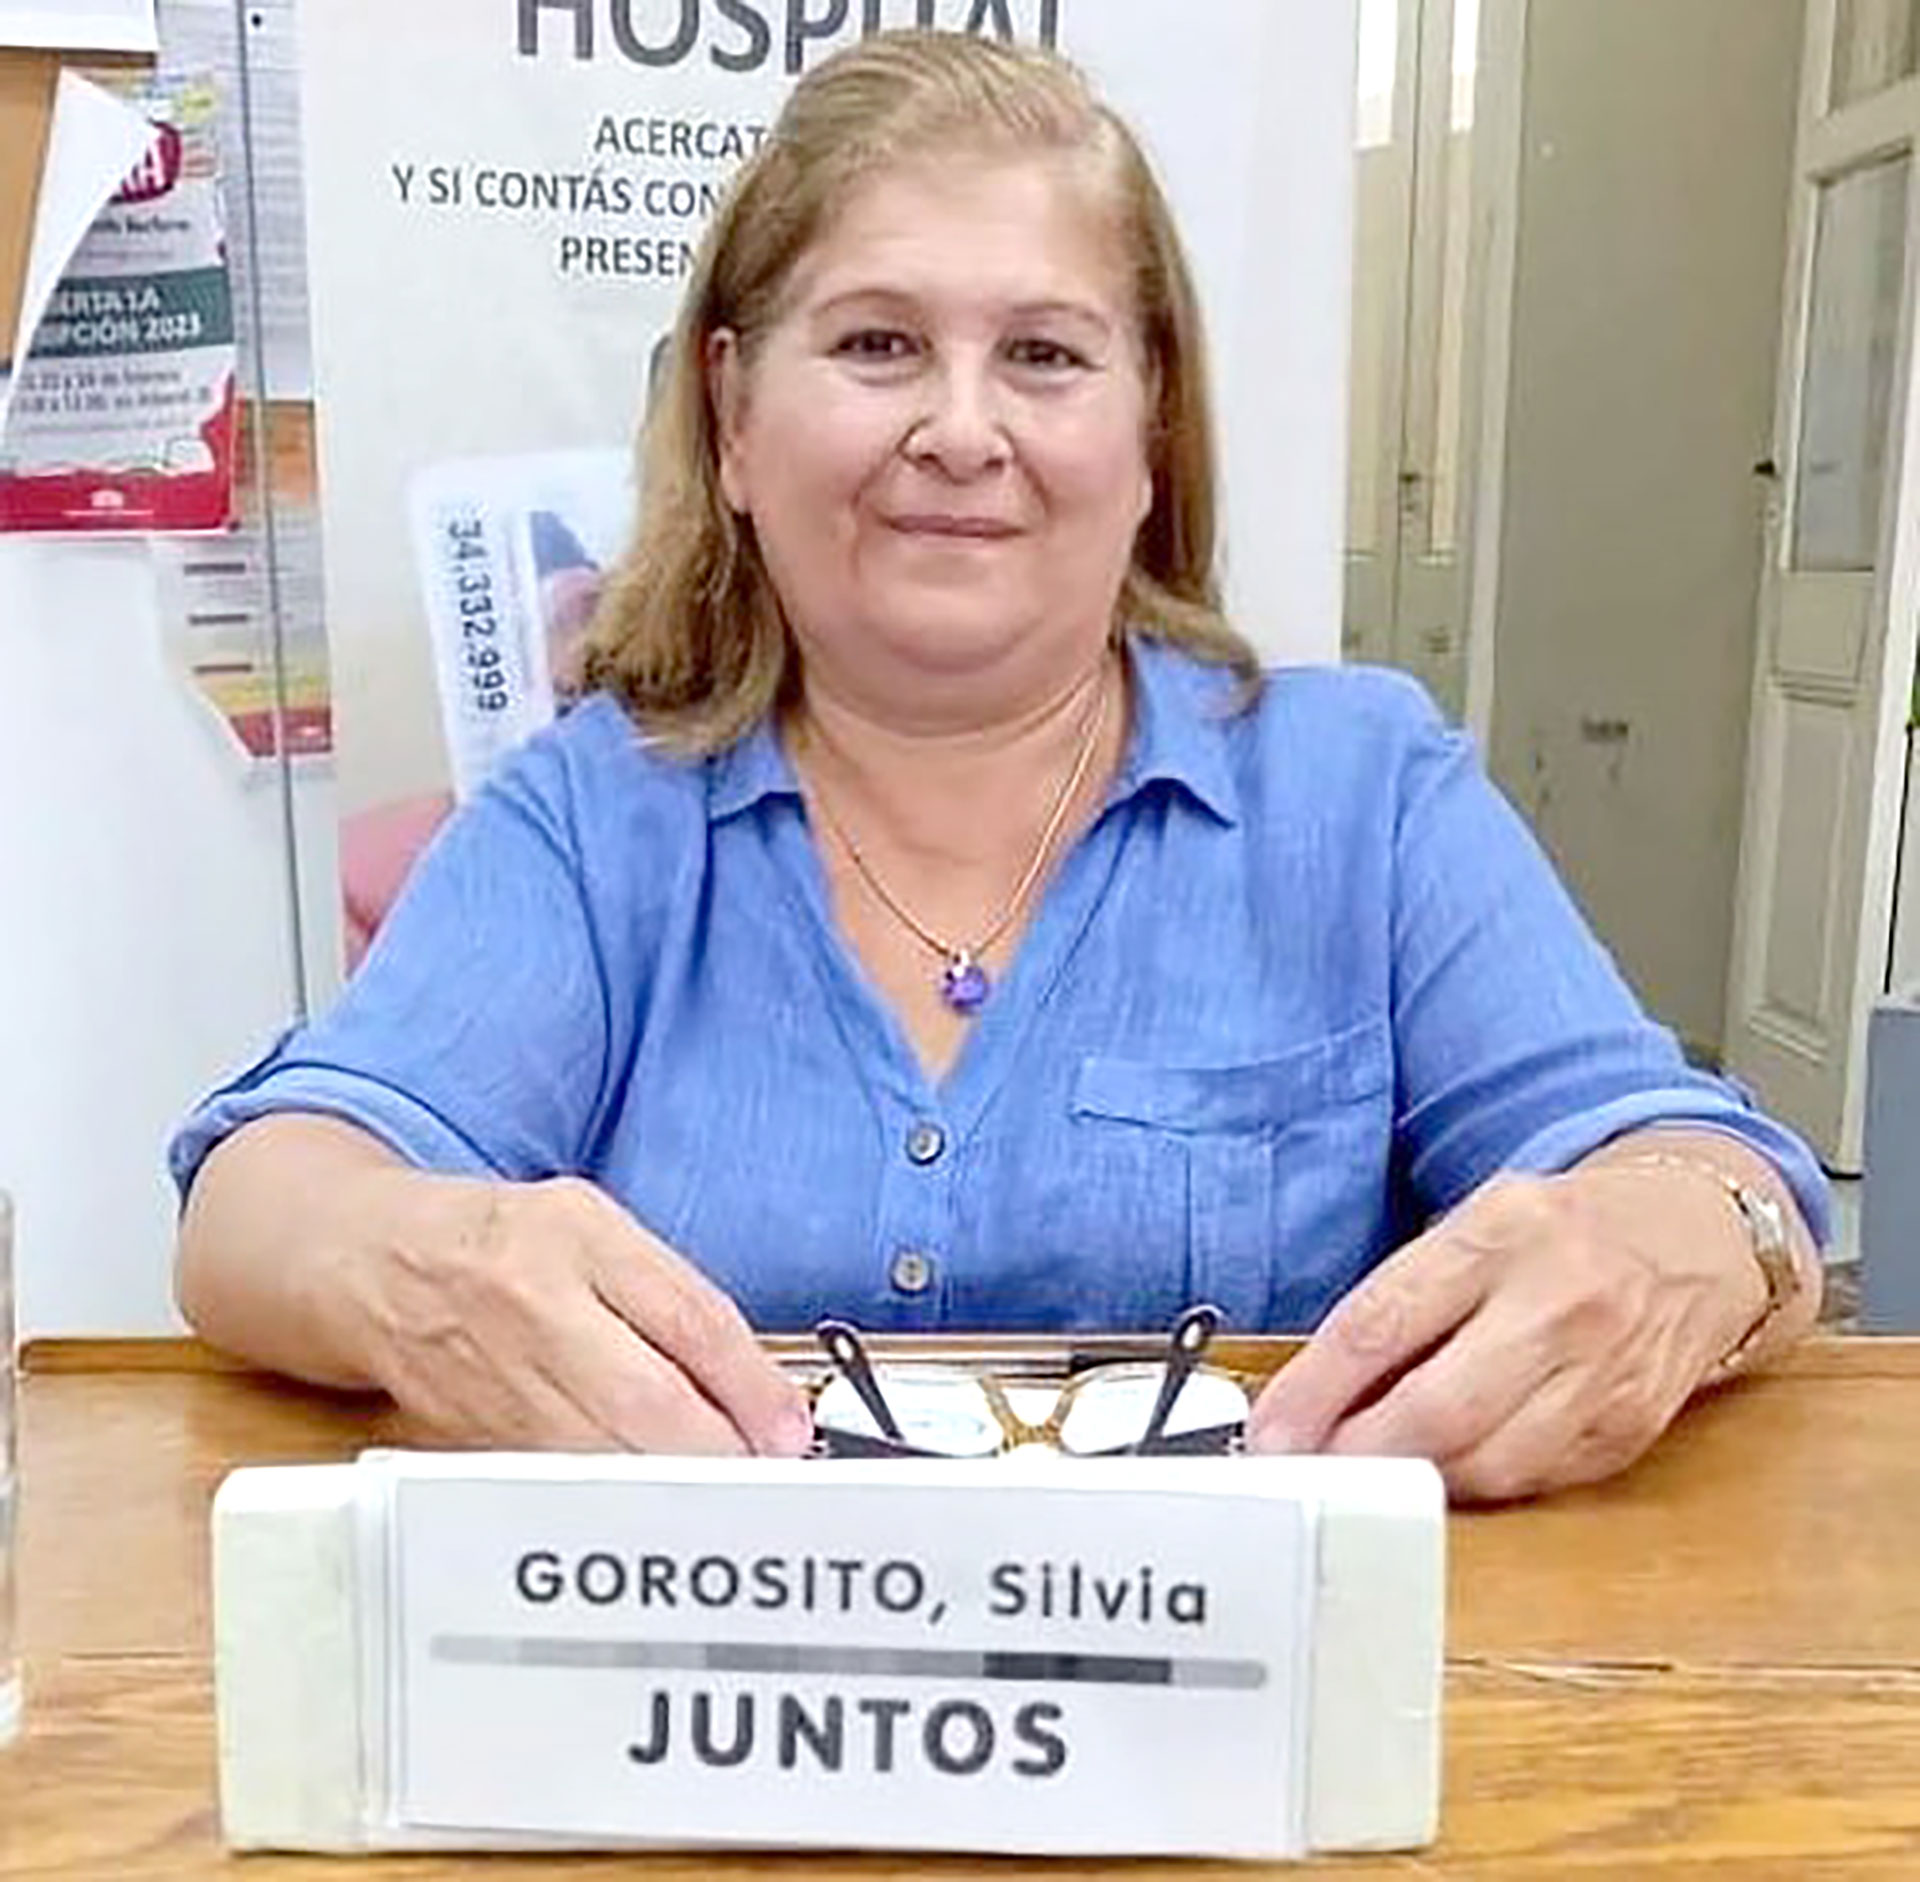 Silvia Gorosito es integrante de la Coalición Cívica (Juntos) y renunció a su cargo como concejal de Chacabuco por sus publicaciones a favor de los crímenes de la dictadura 